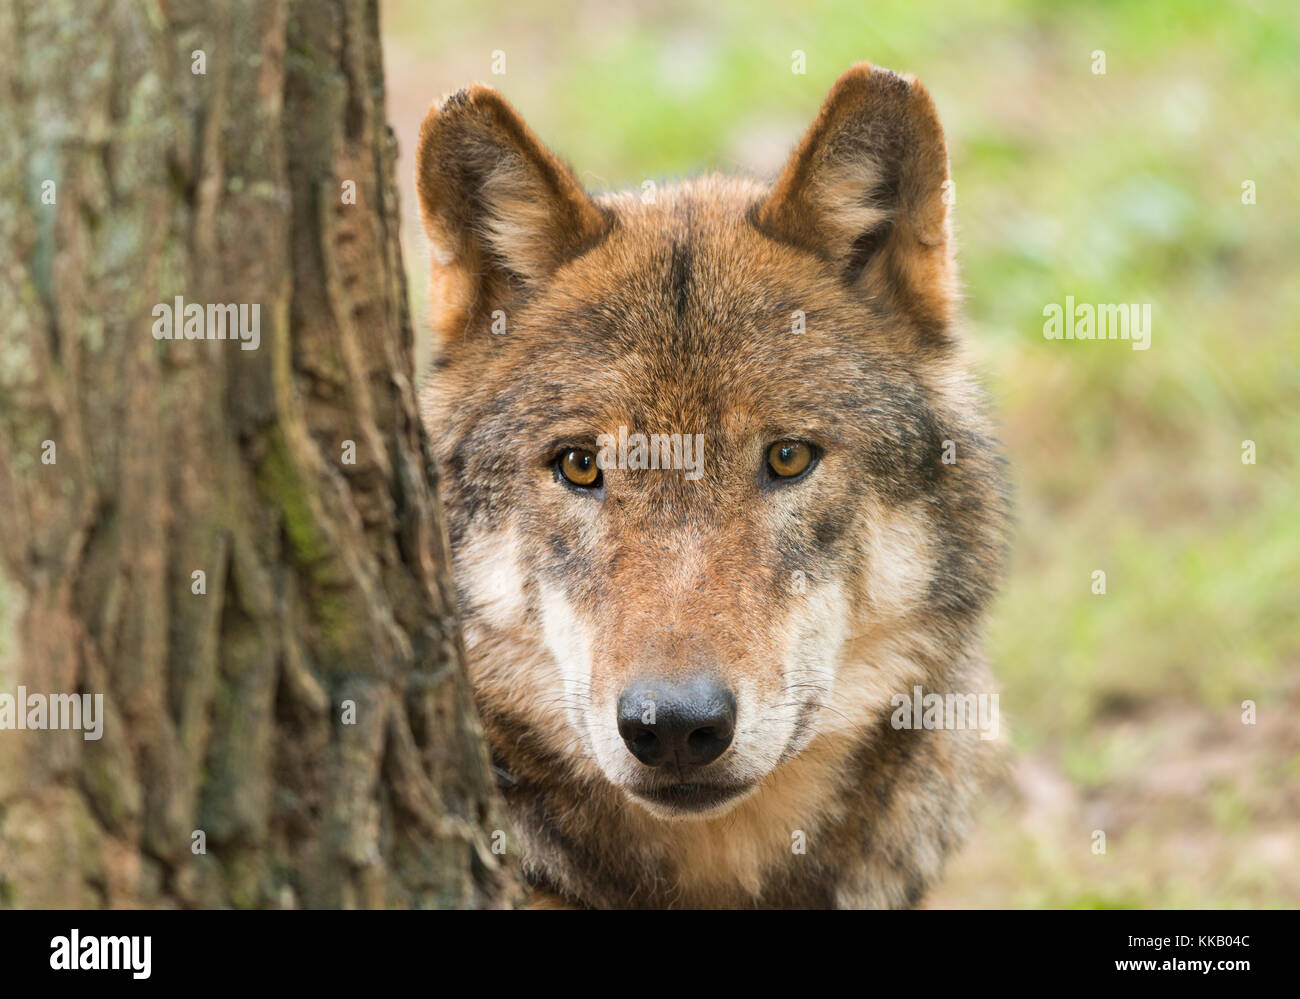 Lupo (Canis lupus) dietro il tronco di albero, ritratto, captive, Germania Foto Stock